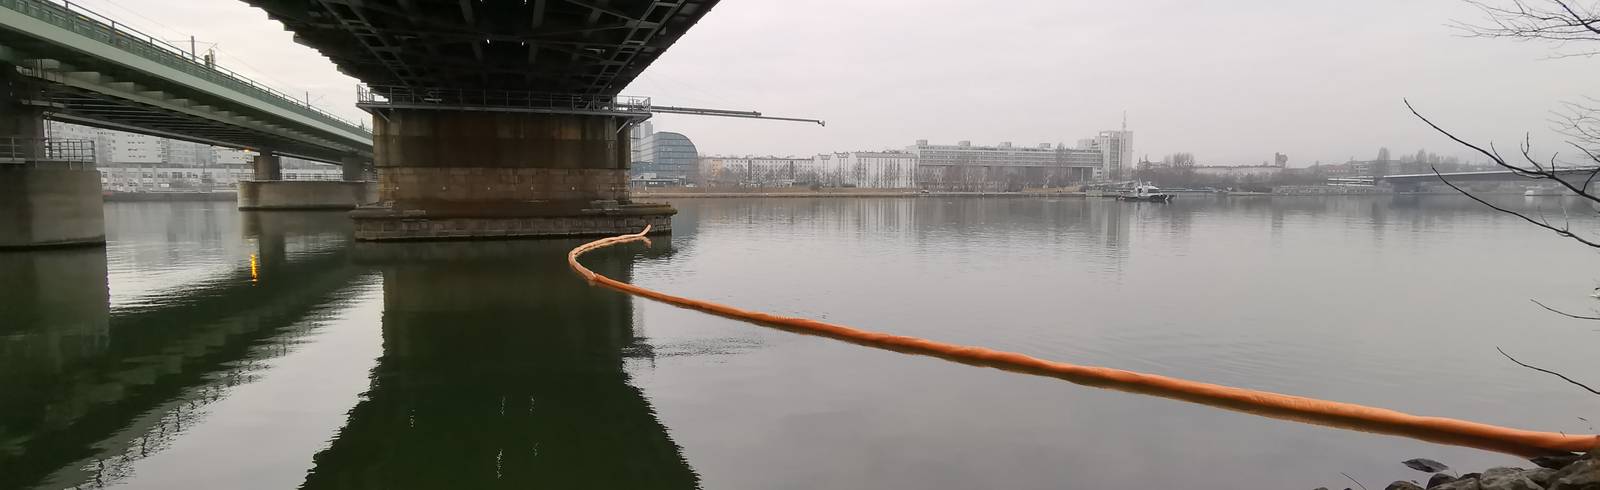 Treibstoff in der Donau bei Wien ausgetreten